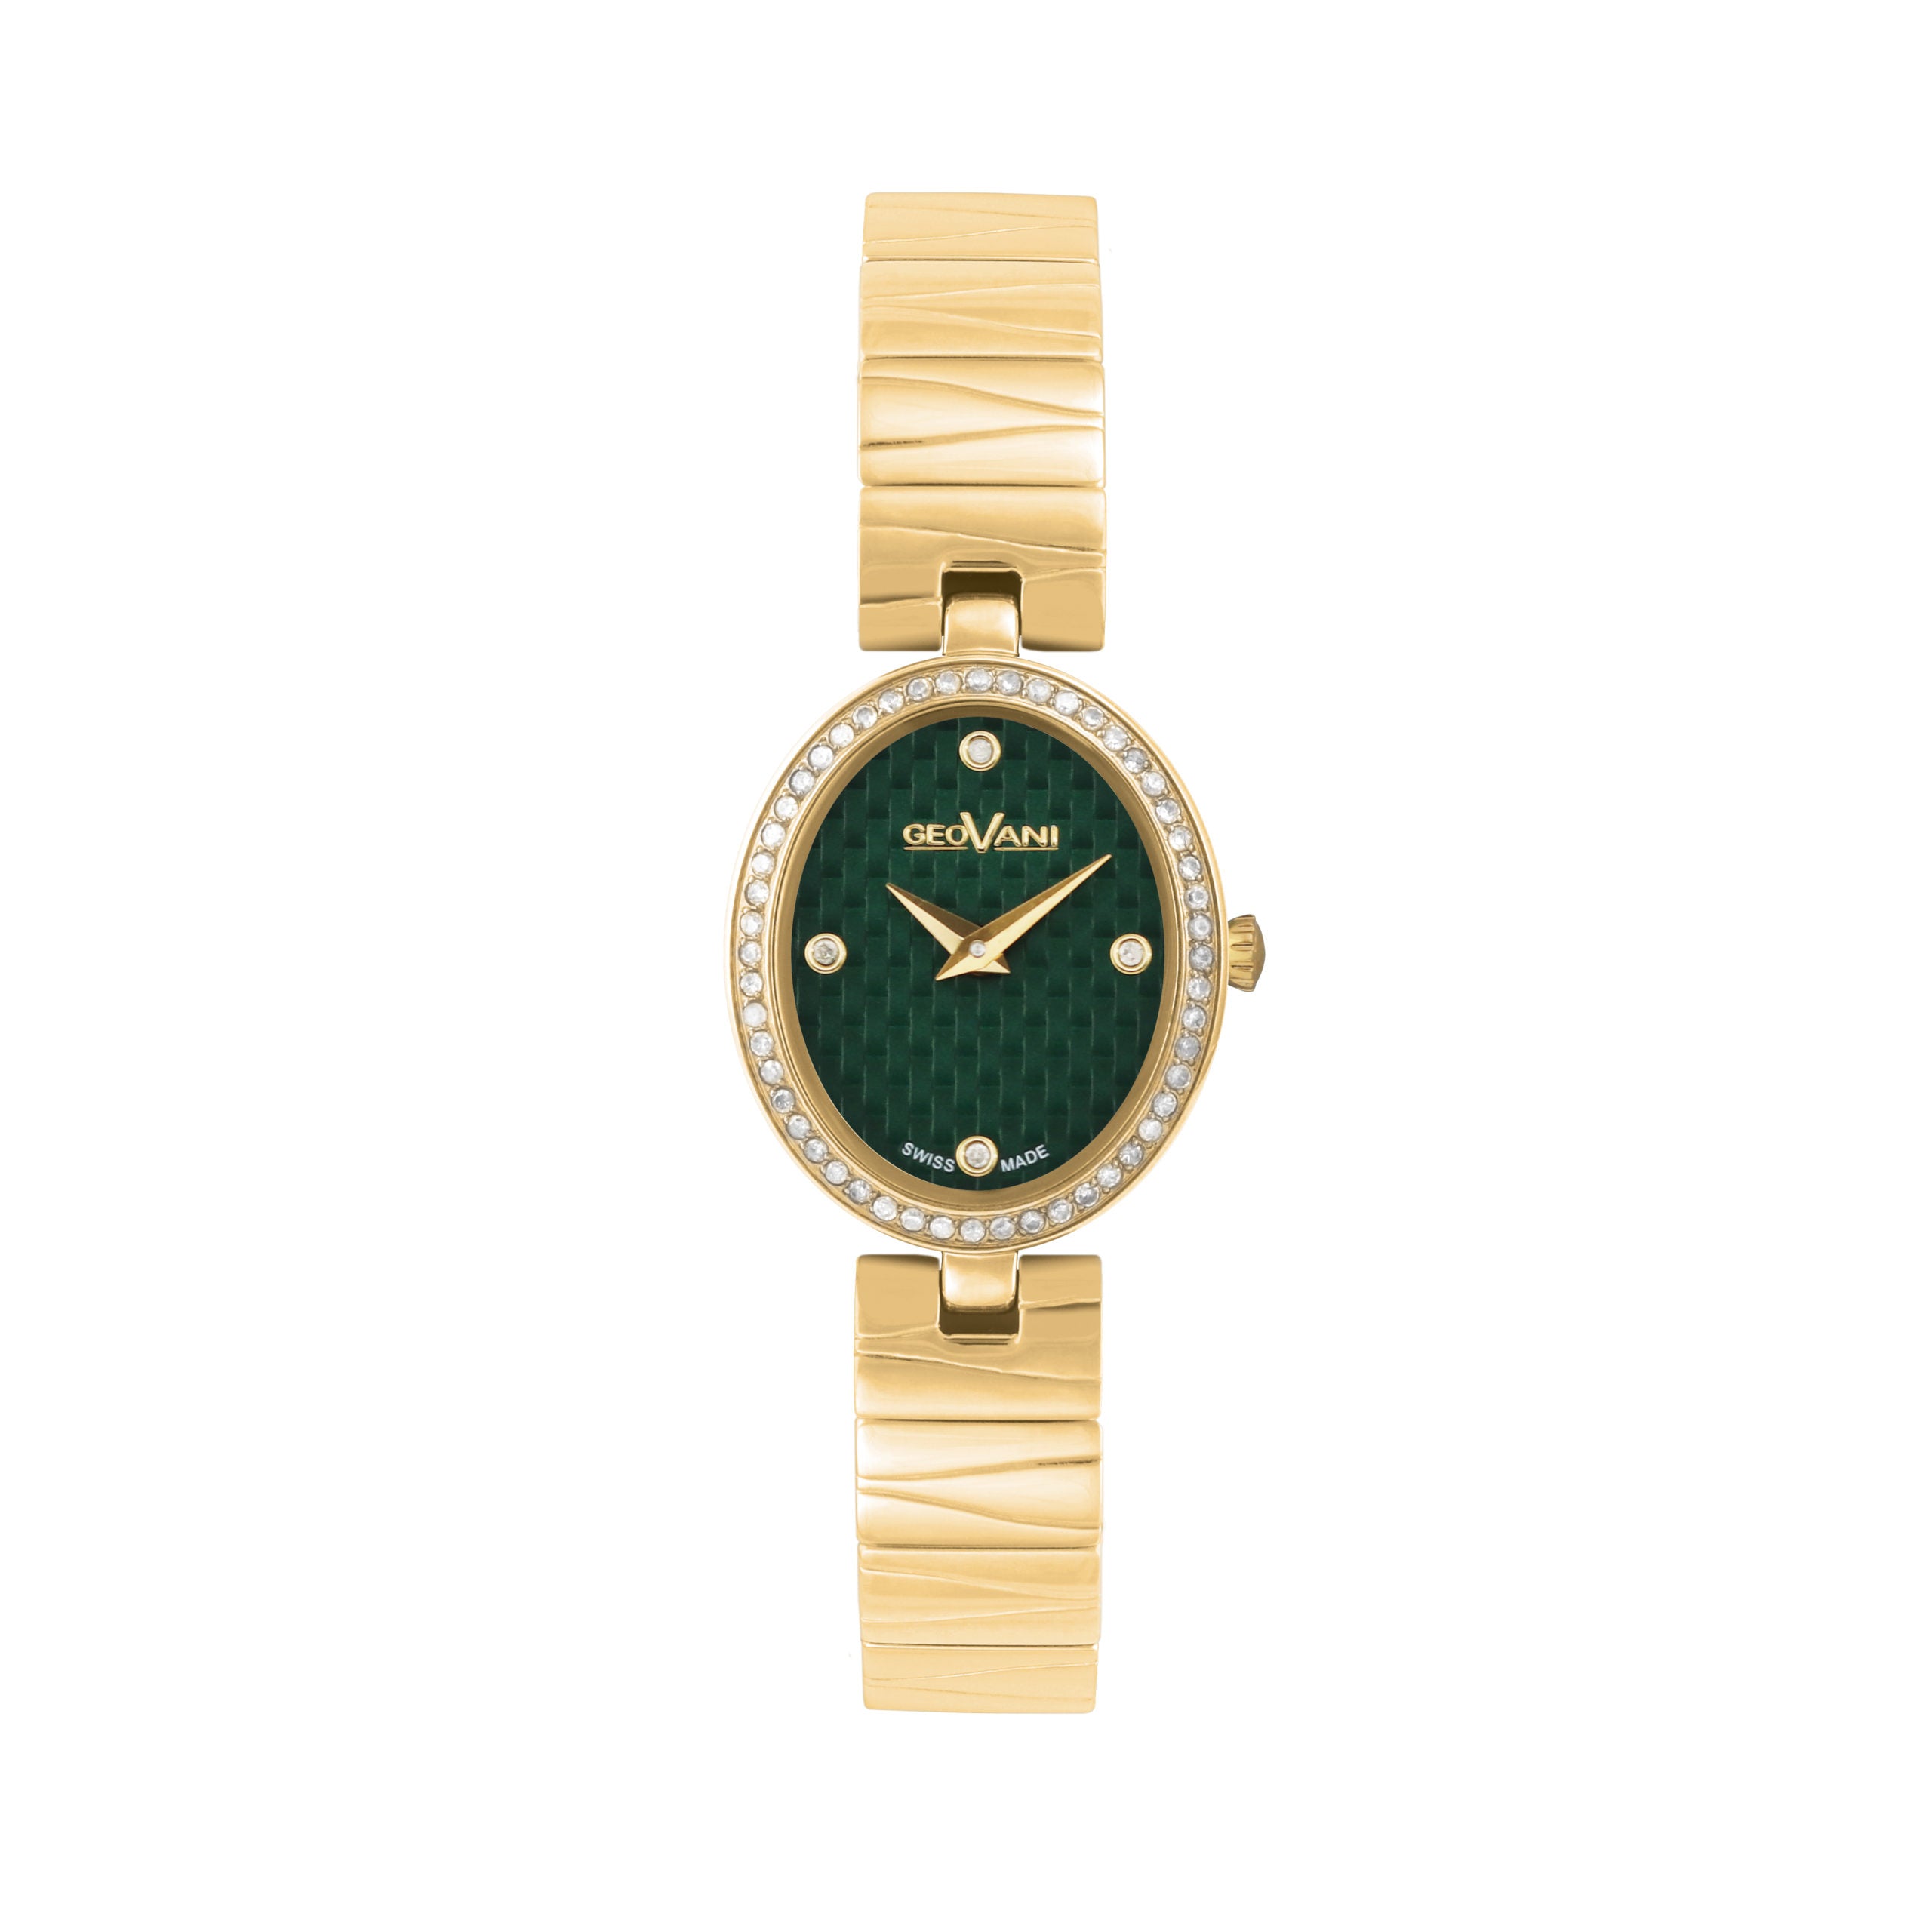 Giovanni Women's Swiss Quartz Watch with Green Dial - GEO-0013